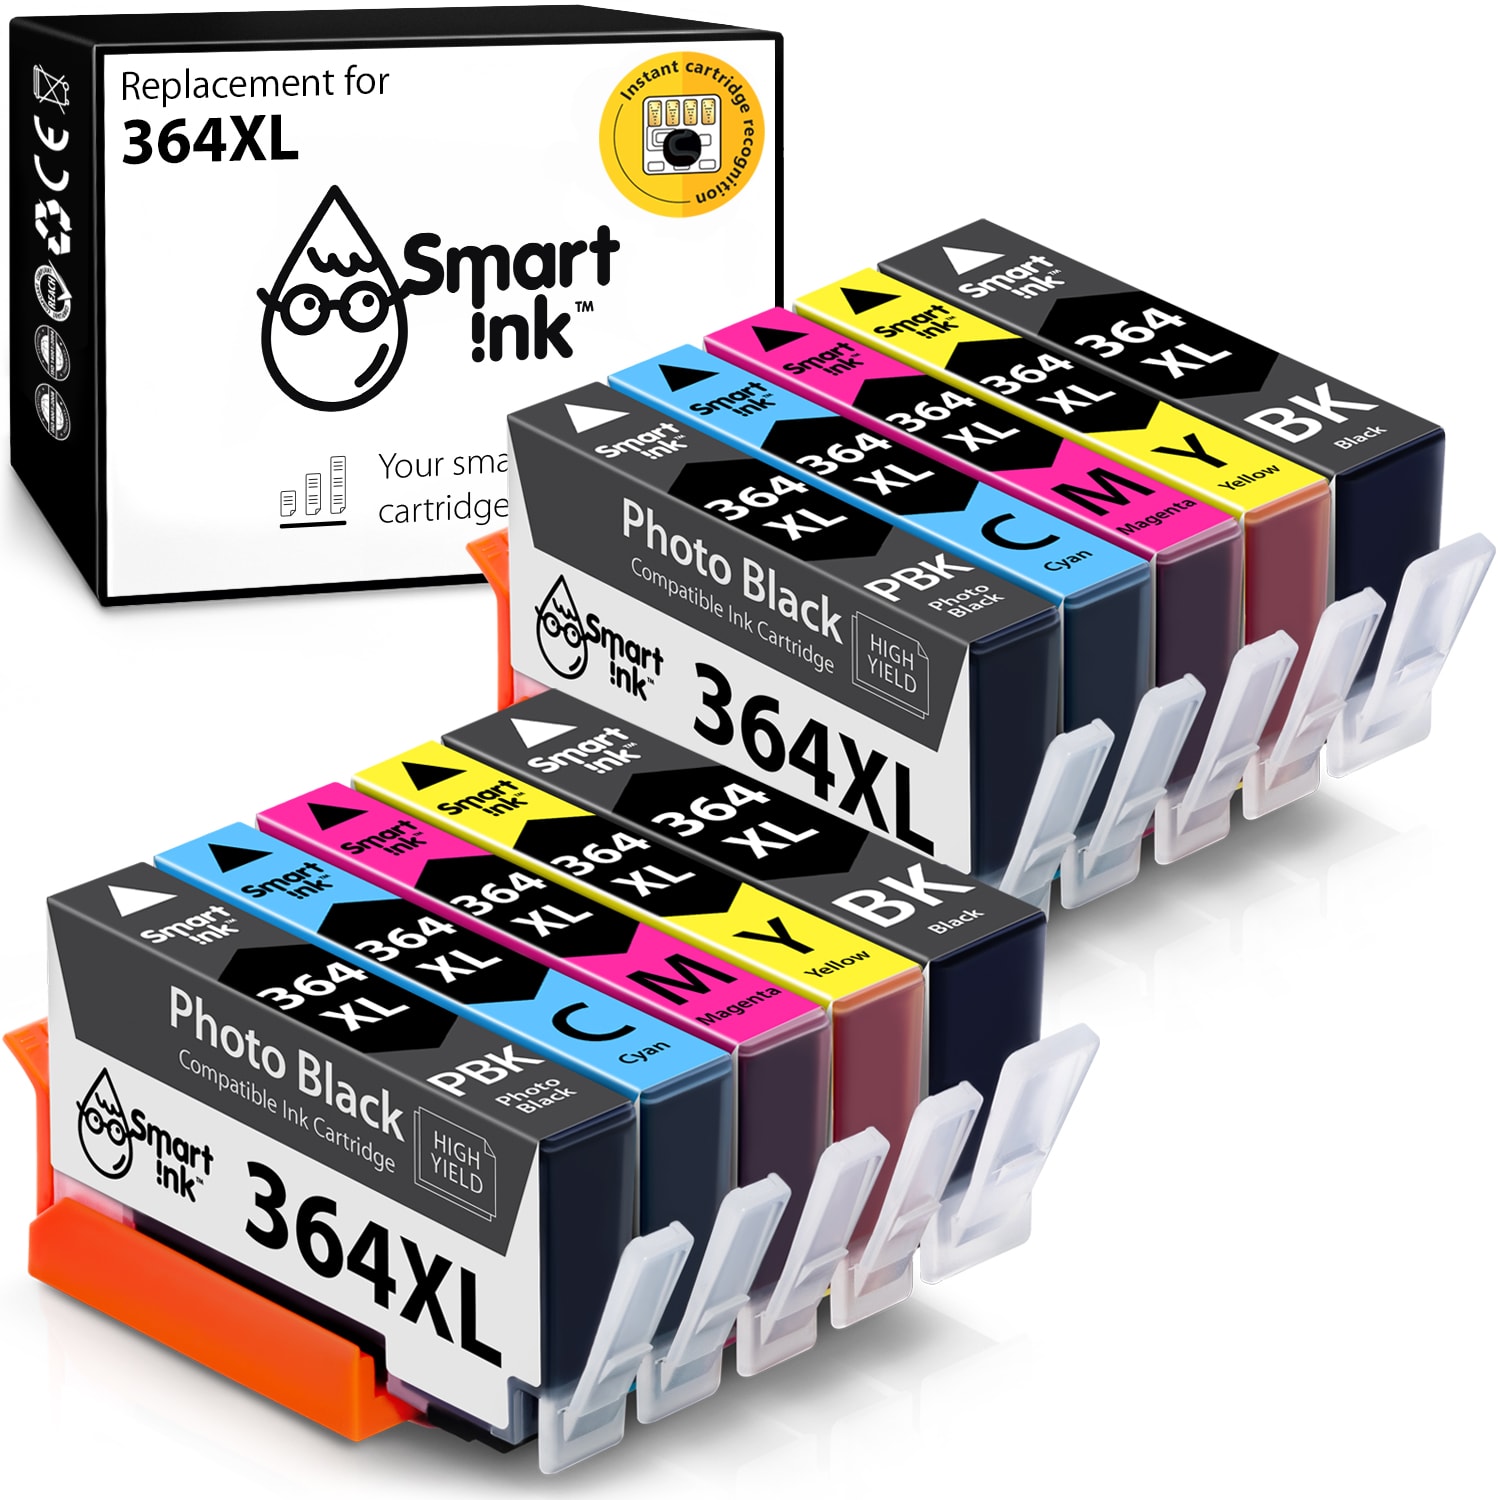 Ijveraar Tenen de begeleiding HP 364 XL (Photo Black) Ink Cartridge Replacement - Buy Printer Cartridges  in Europe at the best price | Smart Ink